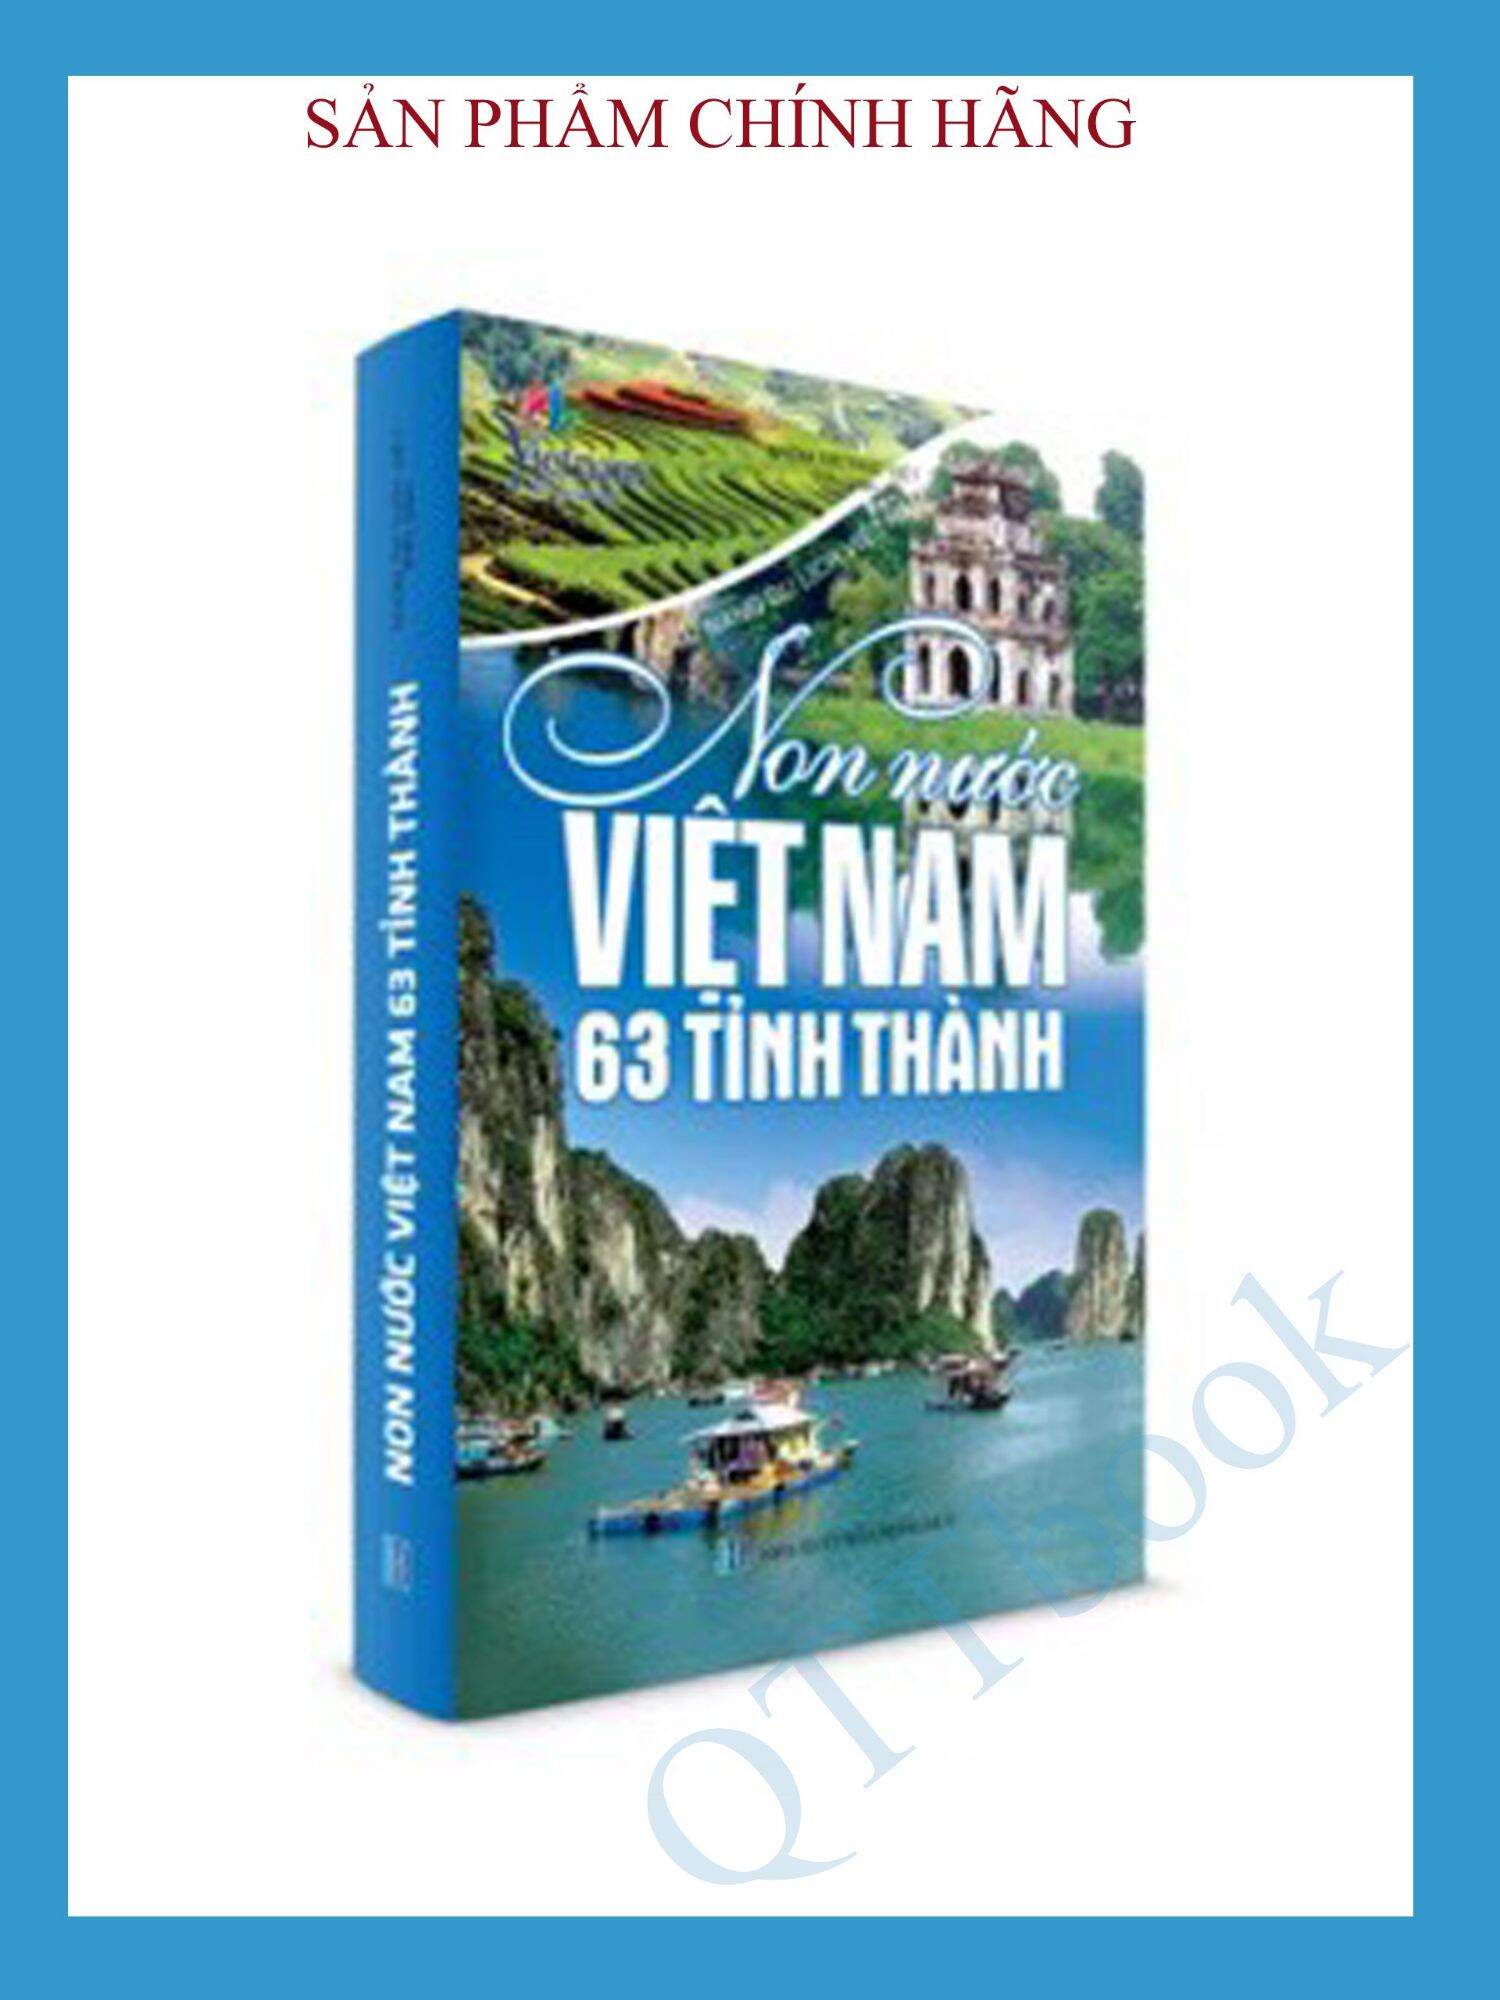 SÁCH - Non nước ViệtNam 63 tỉnh thành